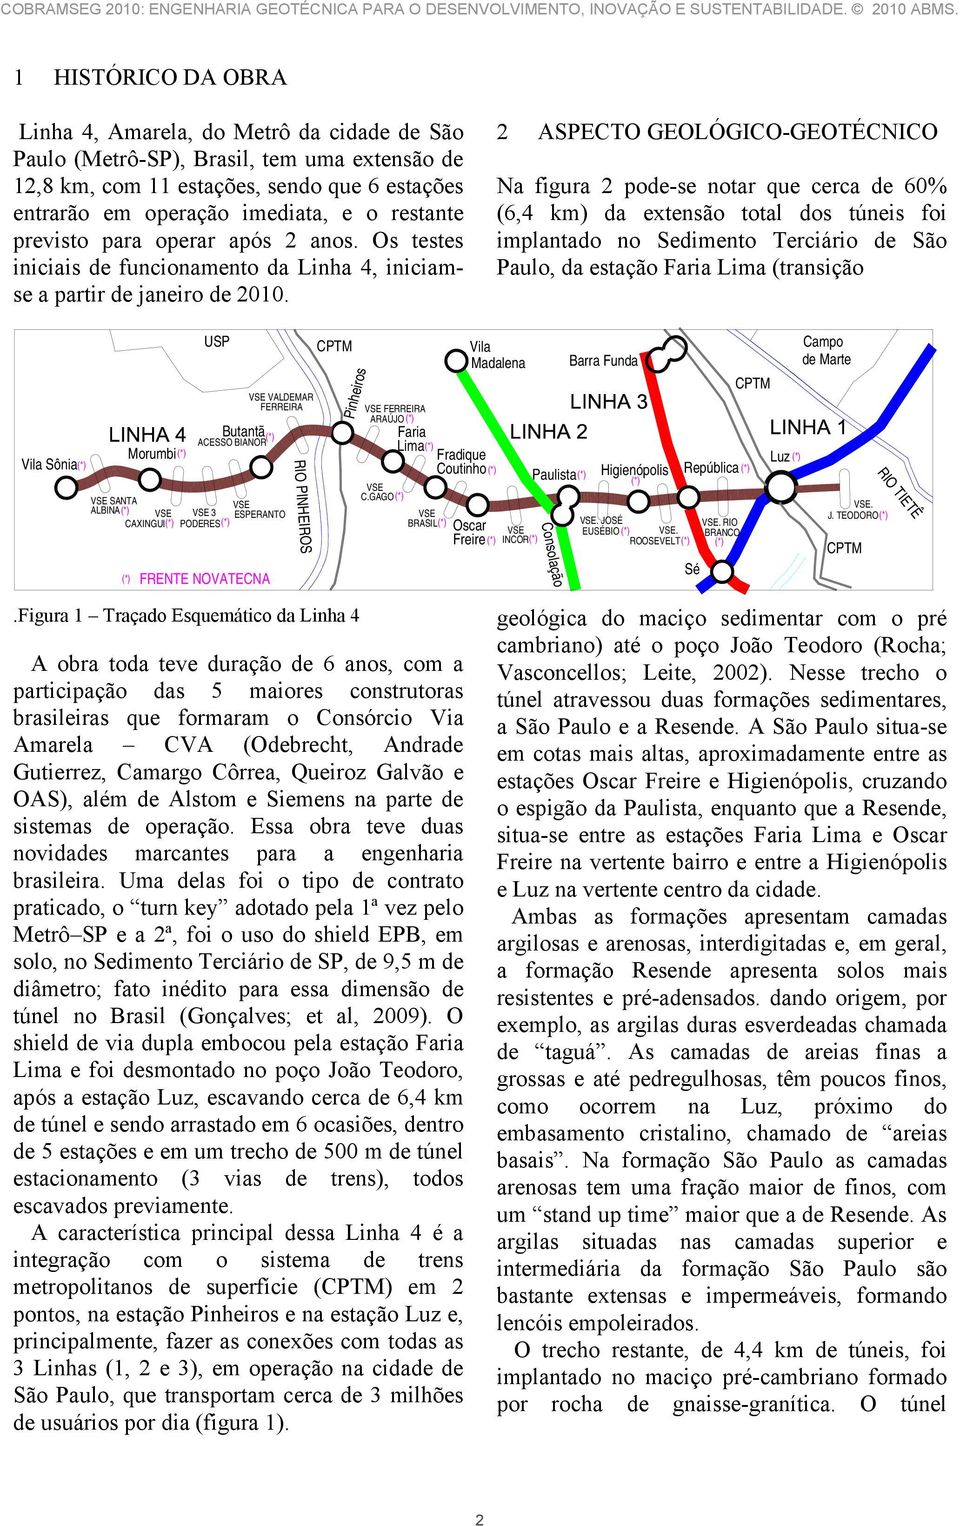 2 ASPECTO GEOLÓGICO-GEOTÉCNICO Na figura 2 pode-se notar que cerca de 60% (6,4 km) da extensão total dos túneis foi implantado no Sedimento Terciário de São Paulo, da estação Faria Lima (transição